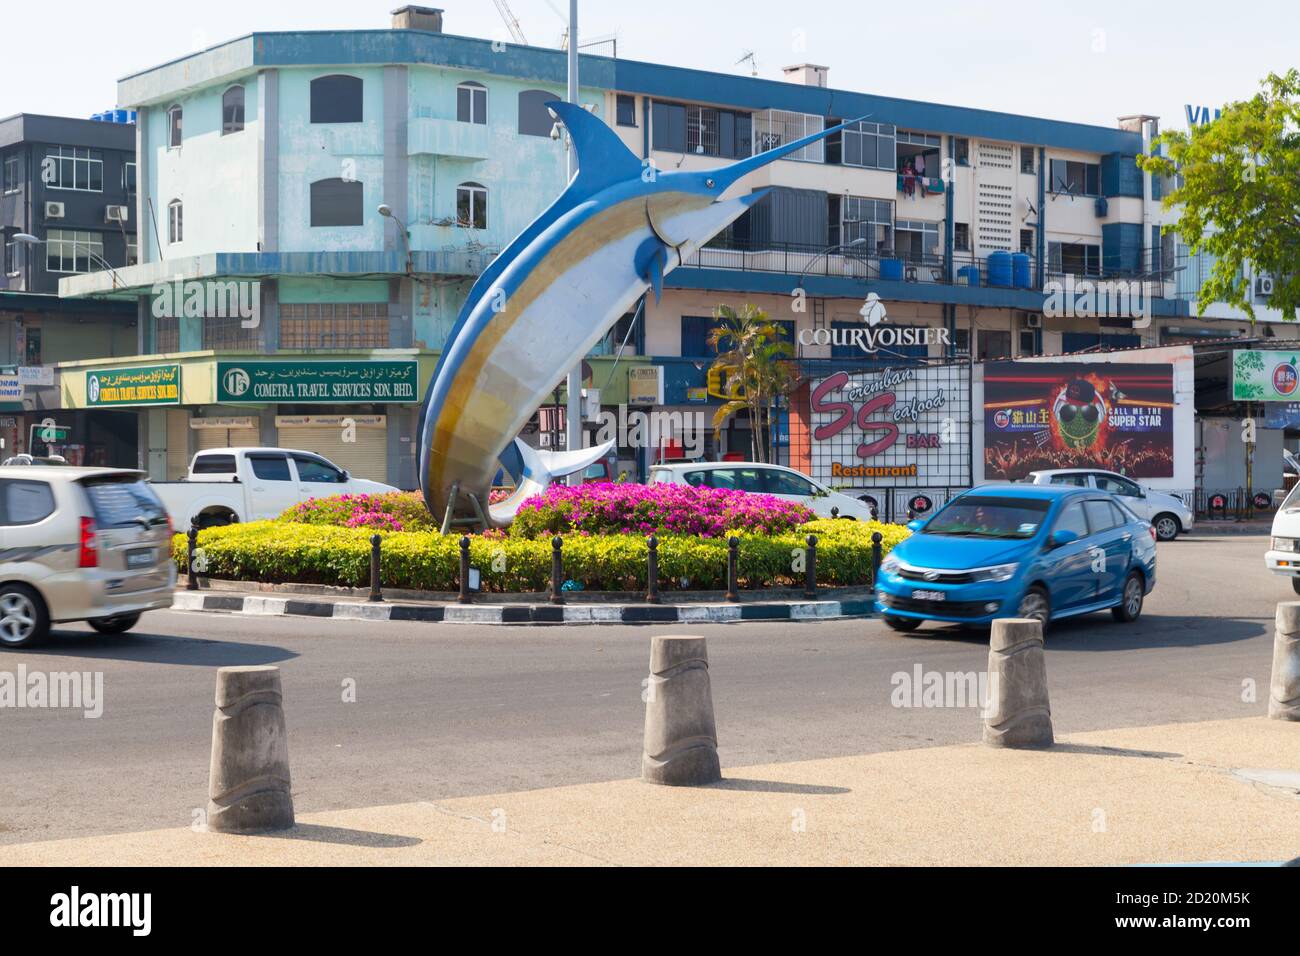 Kota Kinabalu, Malesia - 17 marzo 2019: Statua di Marlin montata sulla rotonda nel quartiere centrale di Kota Kinabalu, la gente comune cammina la strada Foto Stock